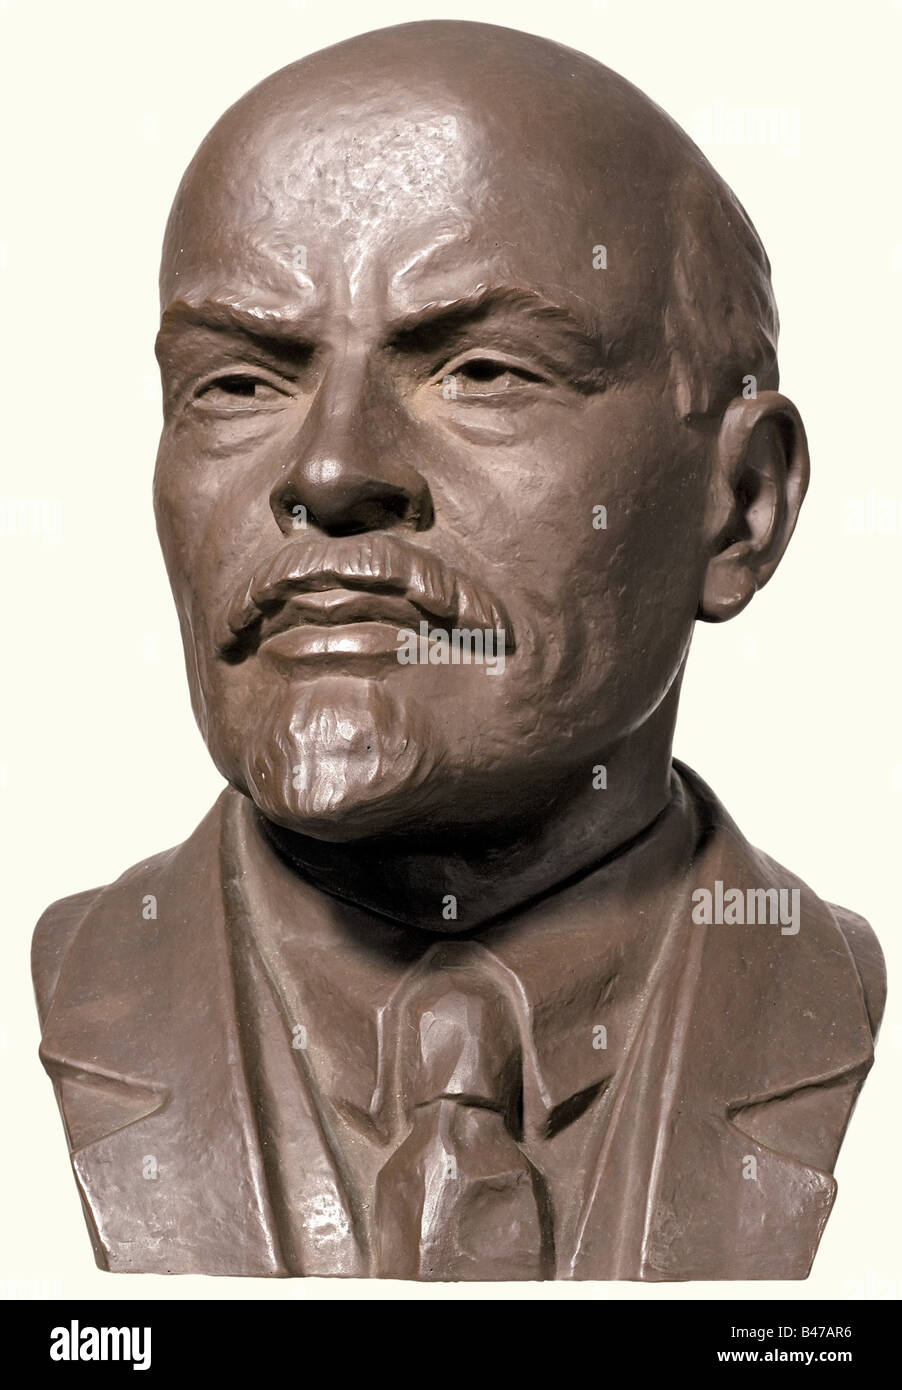 Lenin (1870 - 1924), un busto de retrato, Meissen, el siglo 20 Marrón Böttger gres. Marcas de espada en la espalda y en la parte inferior, con fondo también marcado 'Böttger Steinzeug' (gres Böttger), 'R. 293' y '1100'. Altura 33 cm. Vladimir Ilich Ulyanov junto con Marx y Engels fue el creador del socialismo científico y, en sus escritos, siempre hizo hincapié en el papel de liderazgo del partido comunista como guardia avanzada del proletariado. Gente, objeto, objetos, alambiques, recortes, recortes, recortes, recortes, hombres, hombres, hombres, hombres, hombres, hombres, hombres, hombres, hombres, hombres, hombres, hombres, etc. Foto de stock